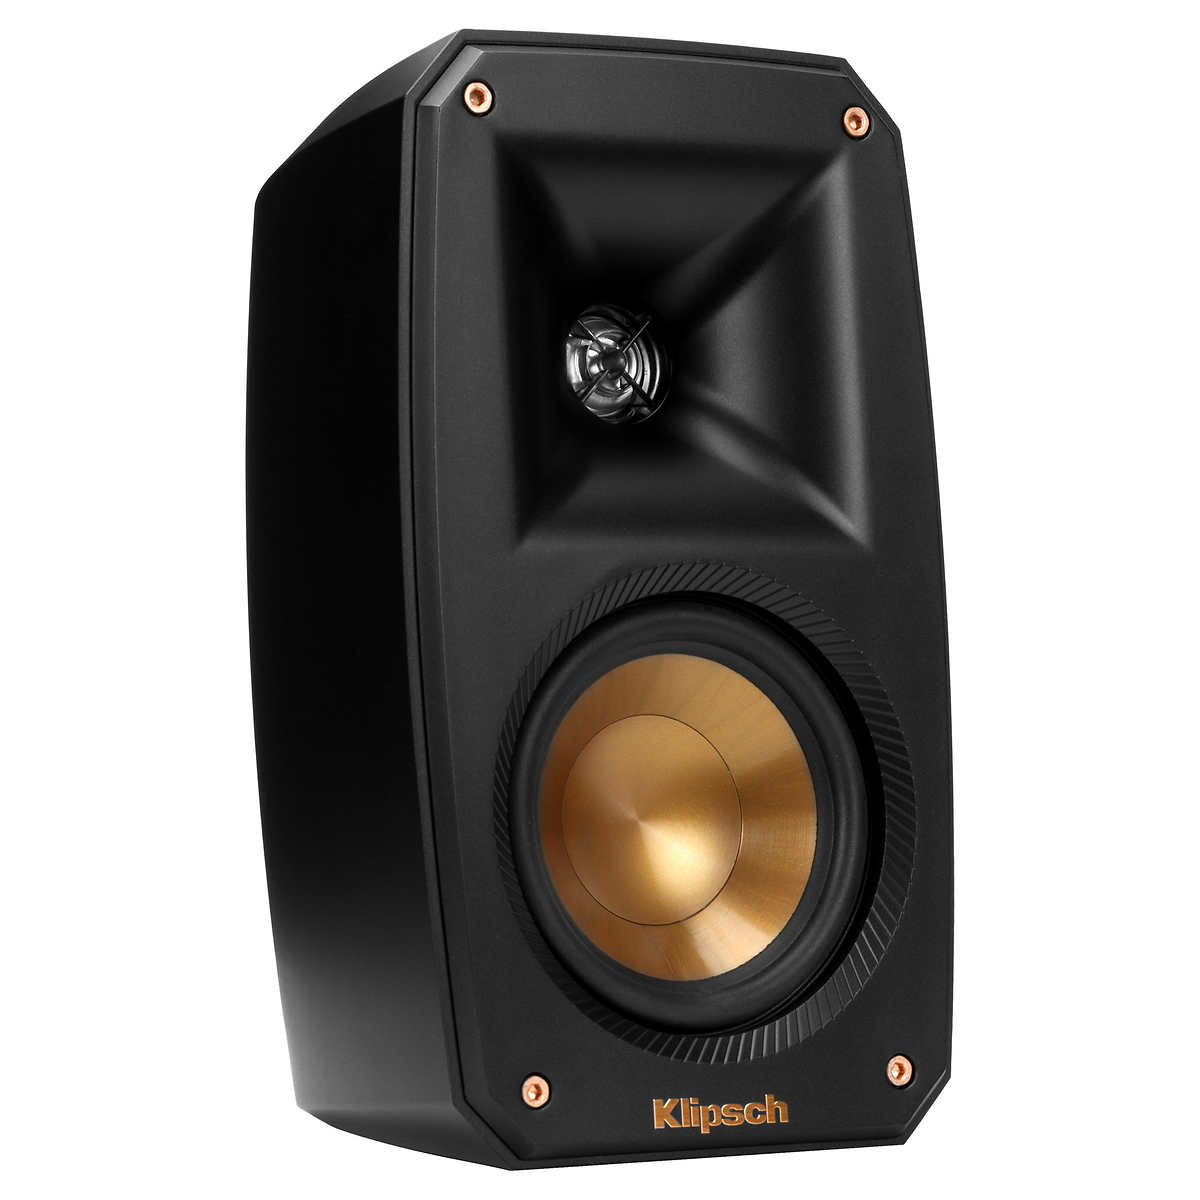 DENON  AVR-S760H Atmos Receiver & Klipsch 5.1 Speaker Package